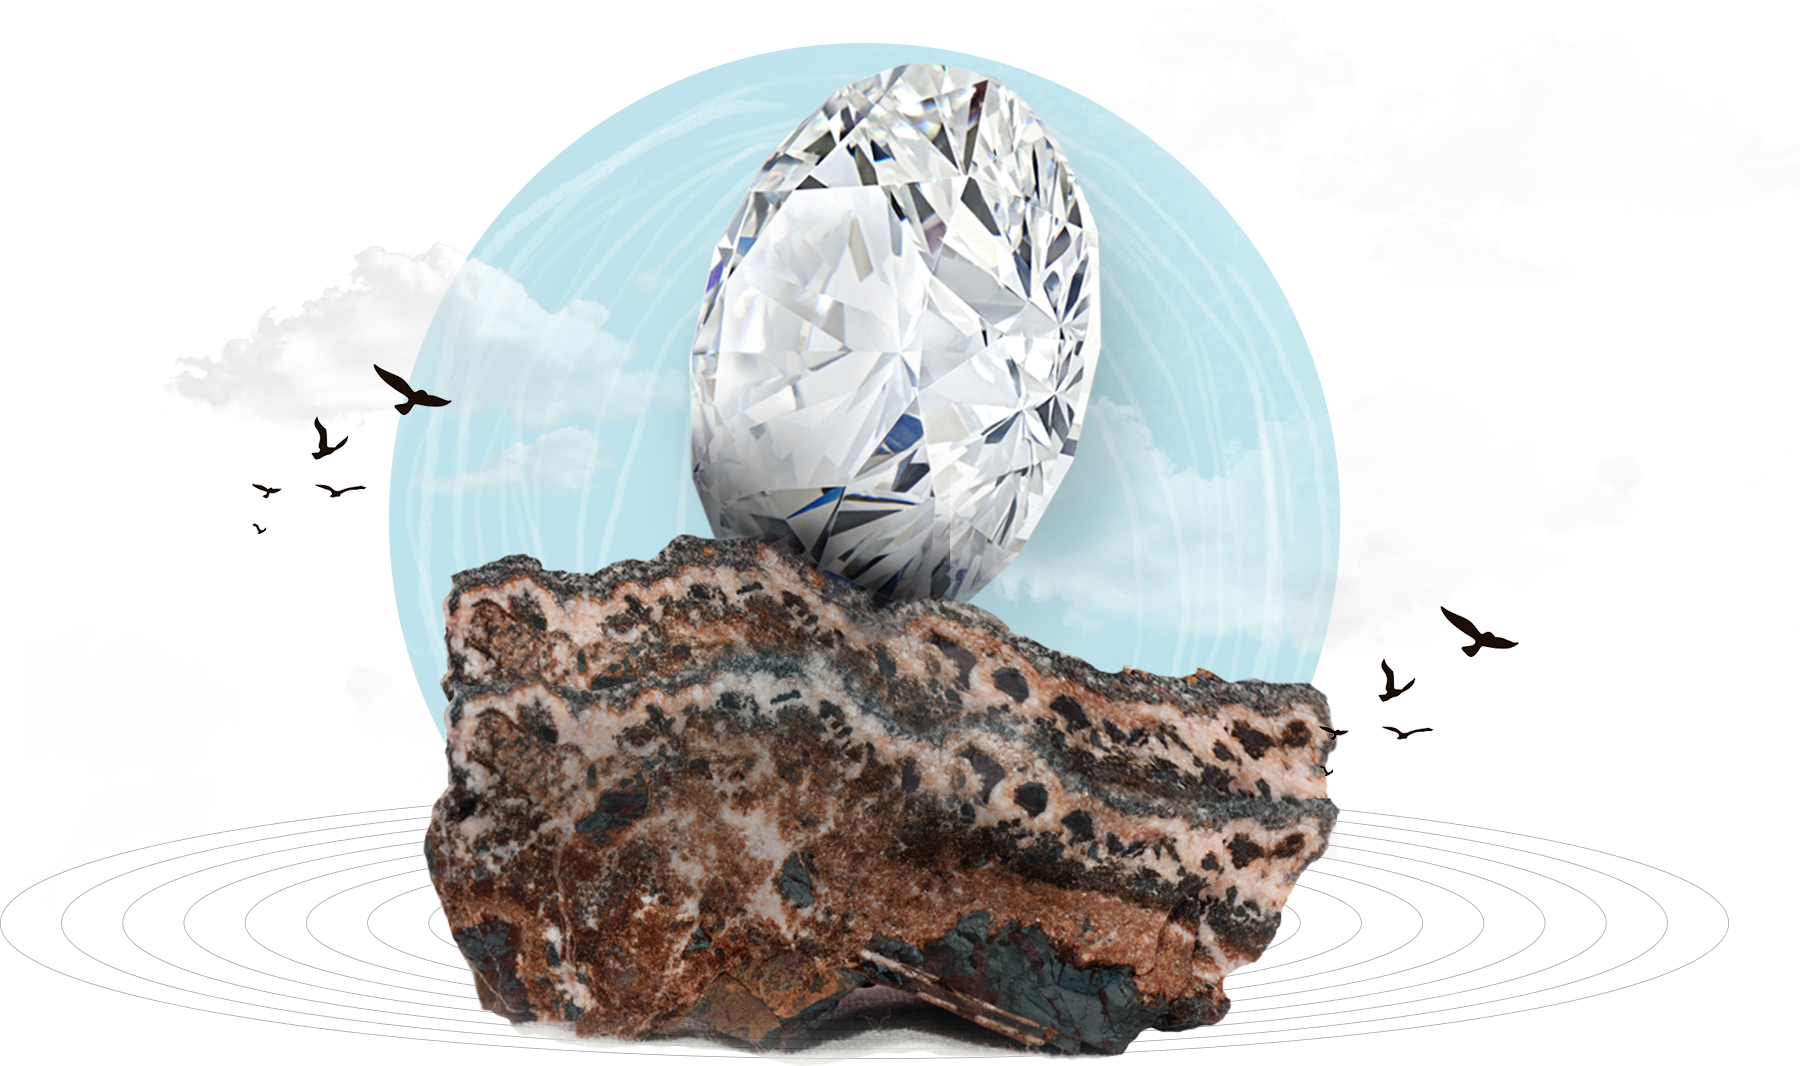  Mining Natural Diamonds 

 